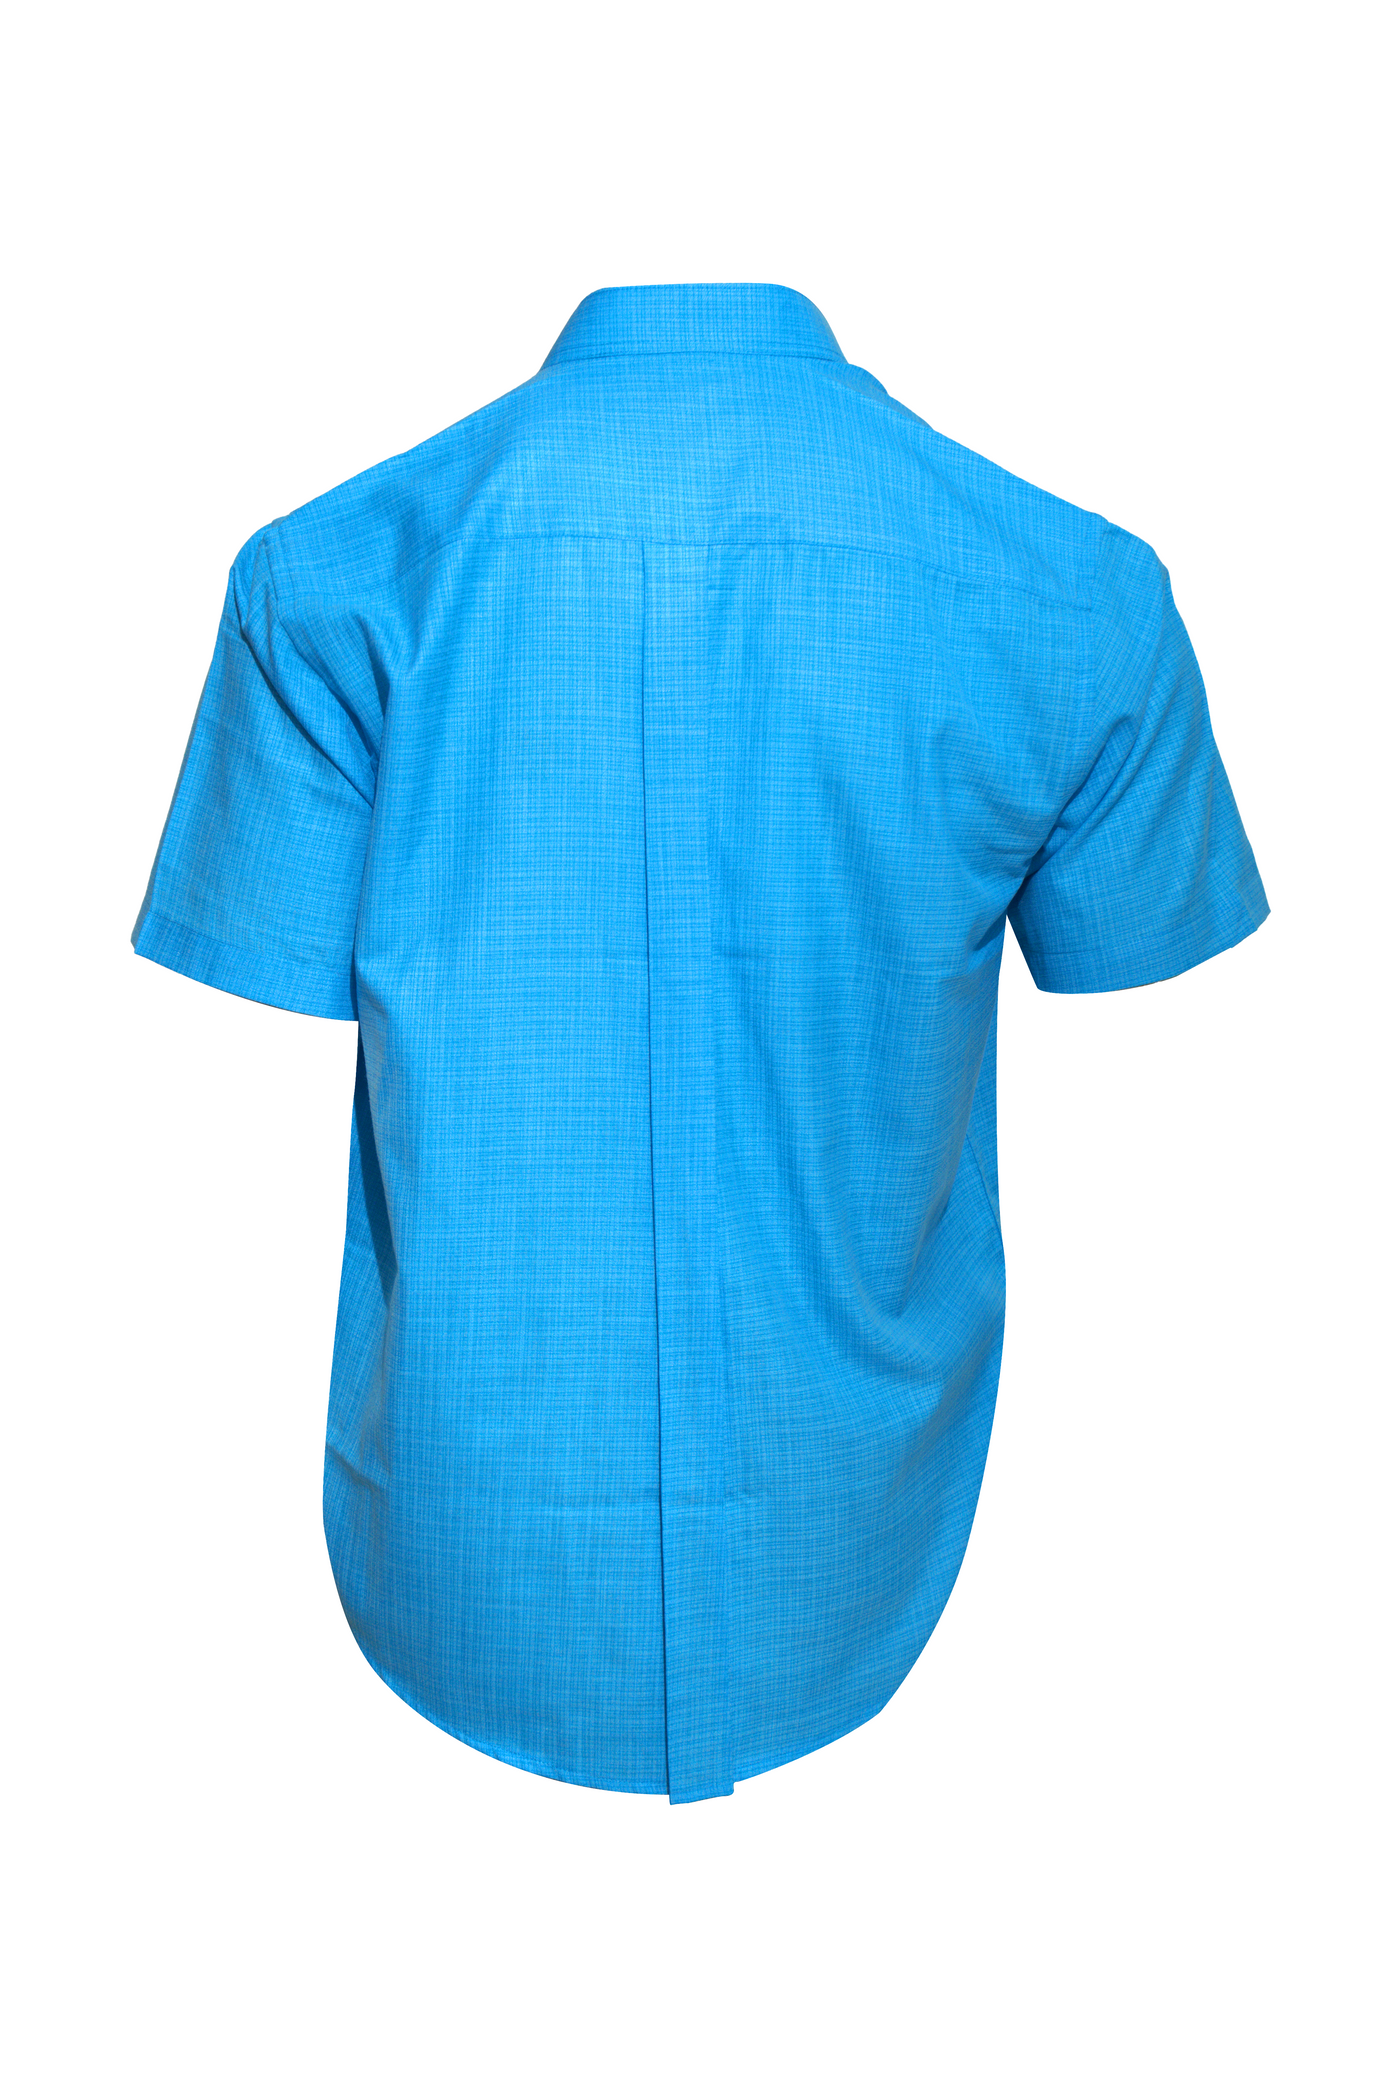 Men's Cobalt Blue Shirt